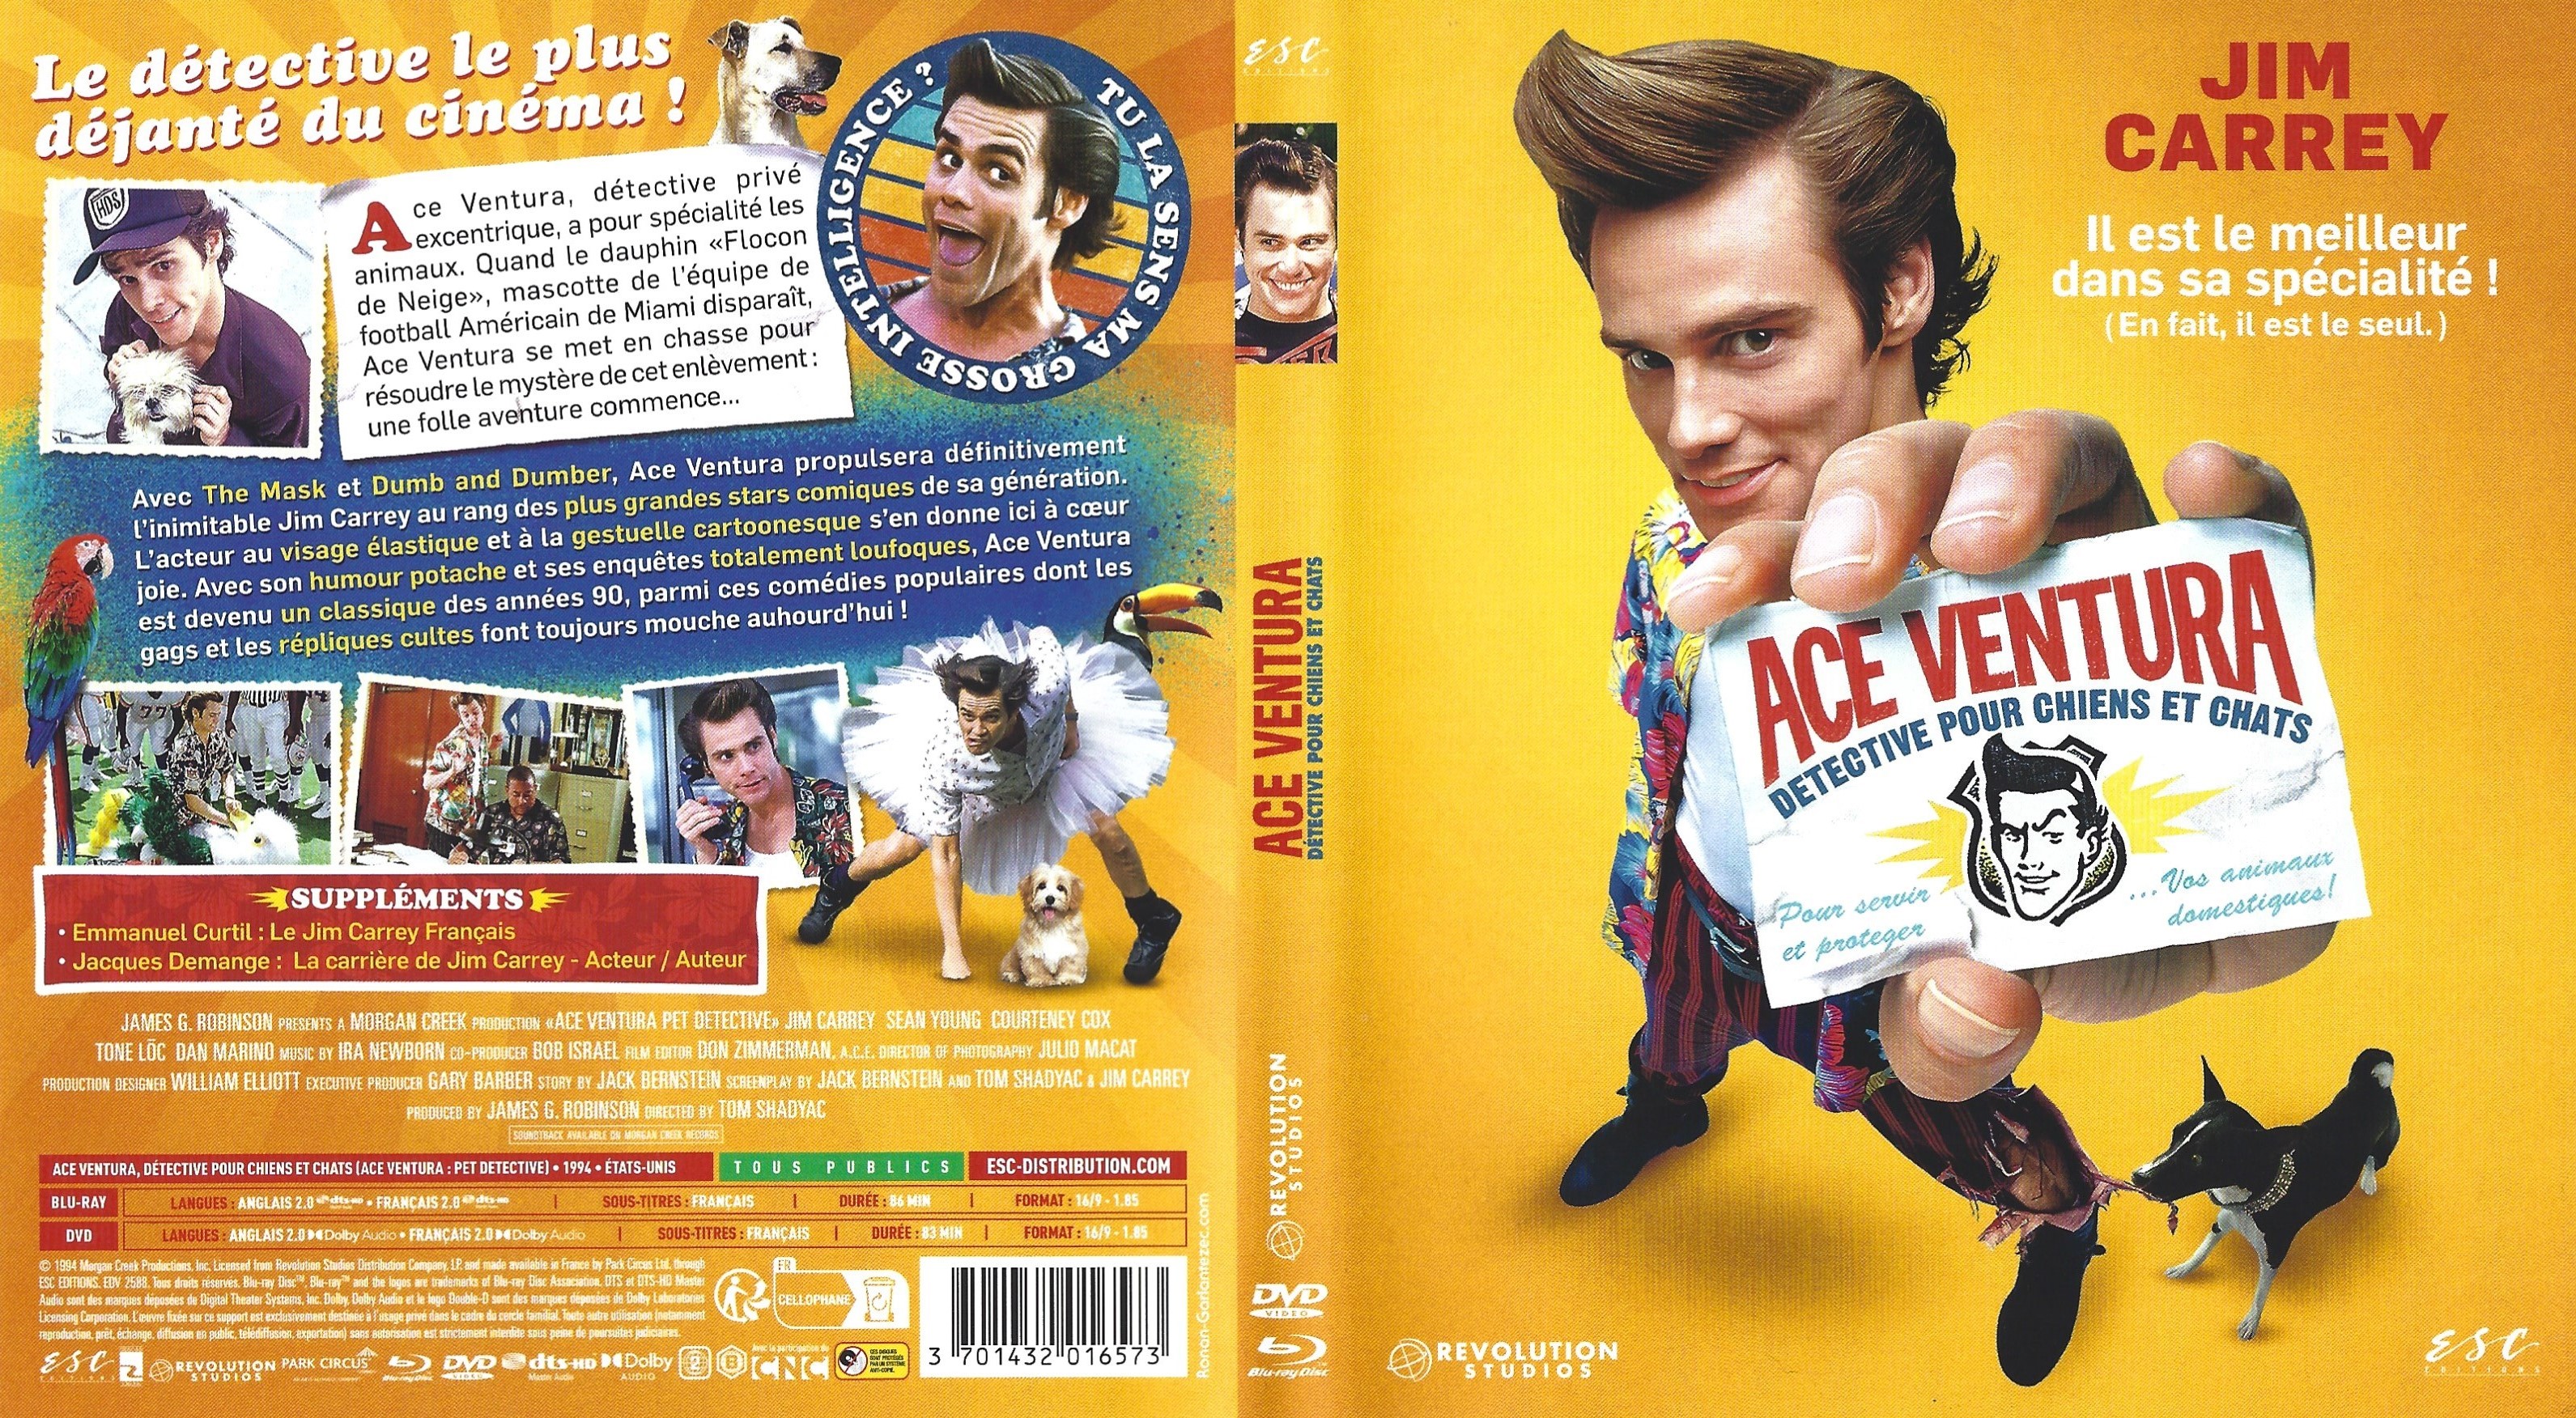 Jaquette DVD Ace Ventura detective pour chiens et chats (BLU-RAY)